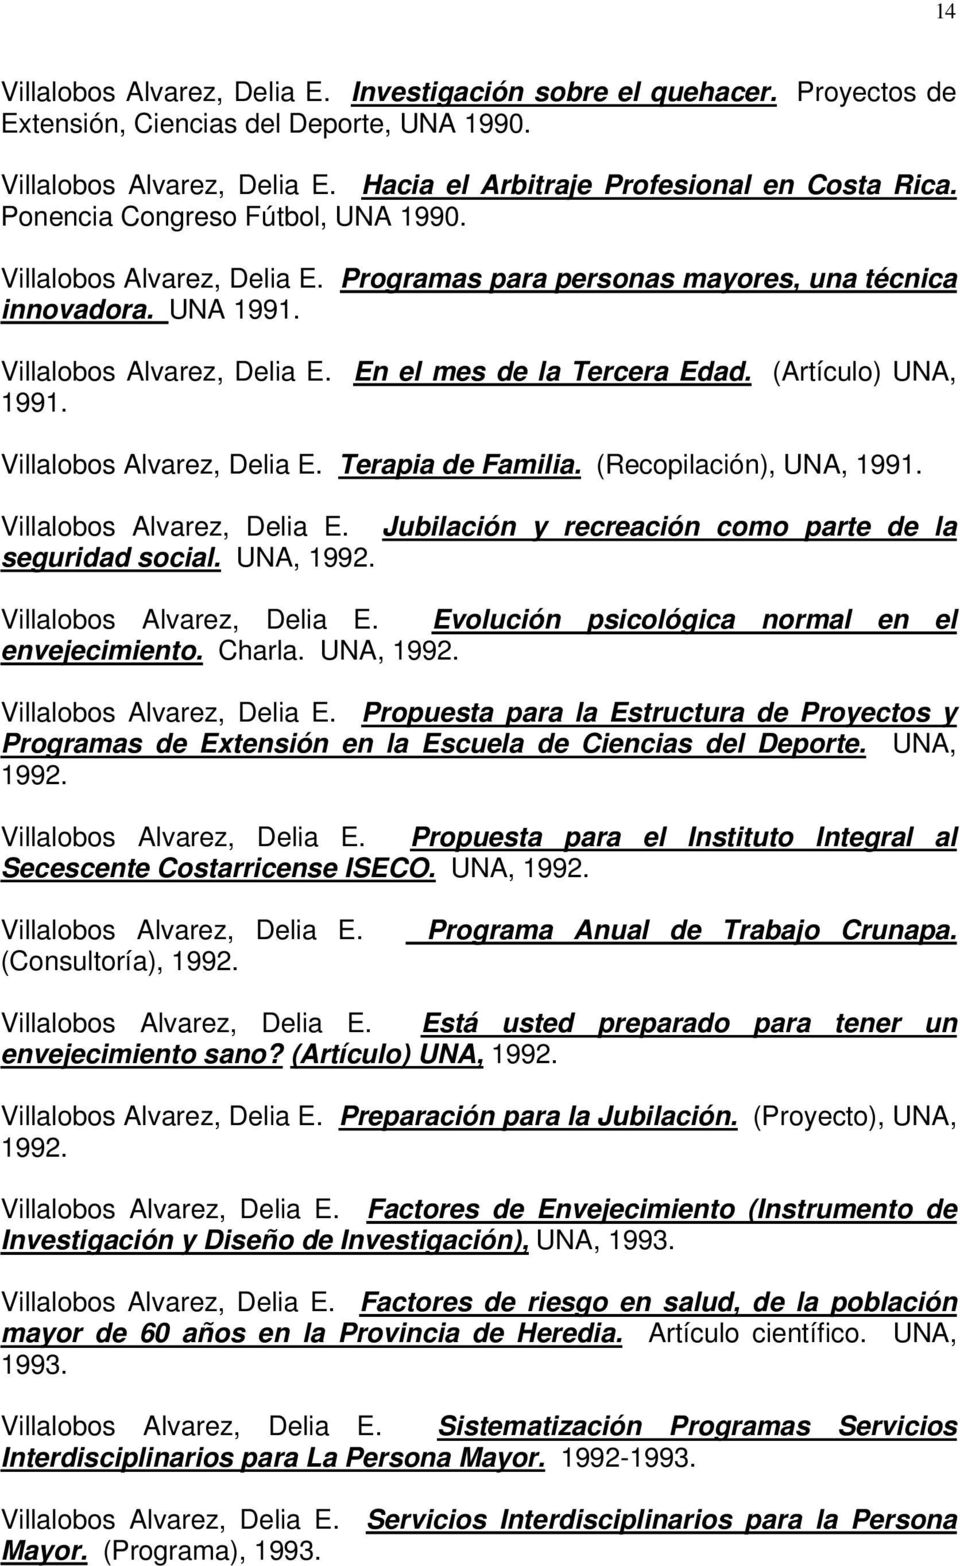 (Artículo) UNA, 1991. Villalobos Alvarez, Delia E. Terapia de Familia. (Recopilación), UNA, 1991. Villalobos Alvarez, Delia E. Jubilación y recreación como parte de la seguridad social. UNA, 1992.